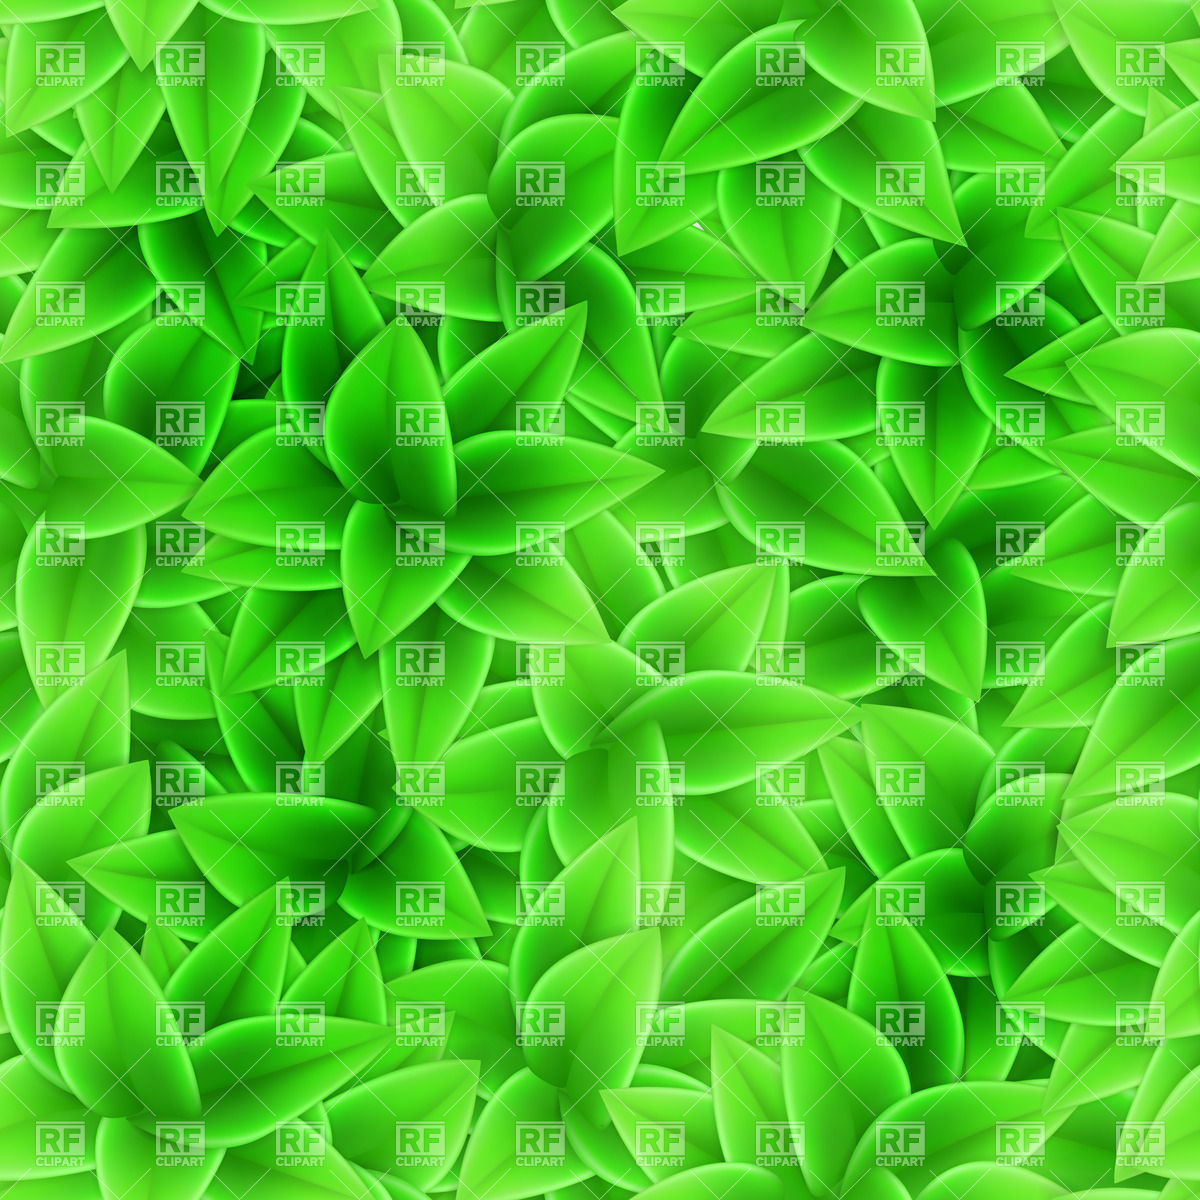 Với màu xanh lá cây tươi mát và đầy sức sống, hình nền lá cây xanh sẽ khiến cho không gian máy tính của bạn trở nên gần gũi với thiên nhiên hơn. Hãy thưởng thức hình ảnh liên quan đến từ khóa này và cảm nhận một khoảnh khắc mát mẻ giữa những ngày làm việc căng thẳng.